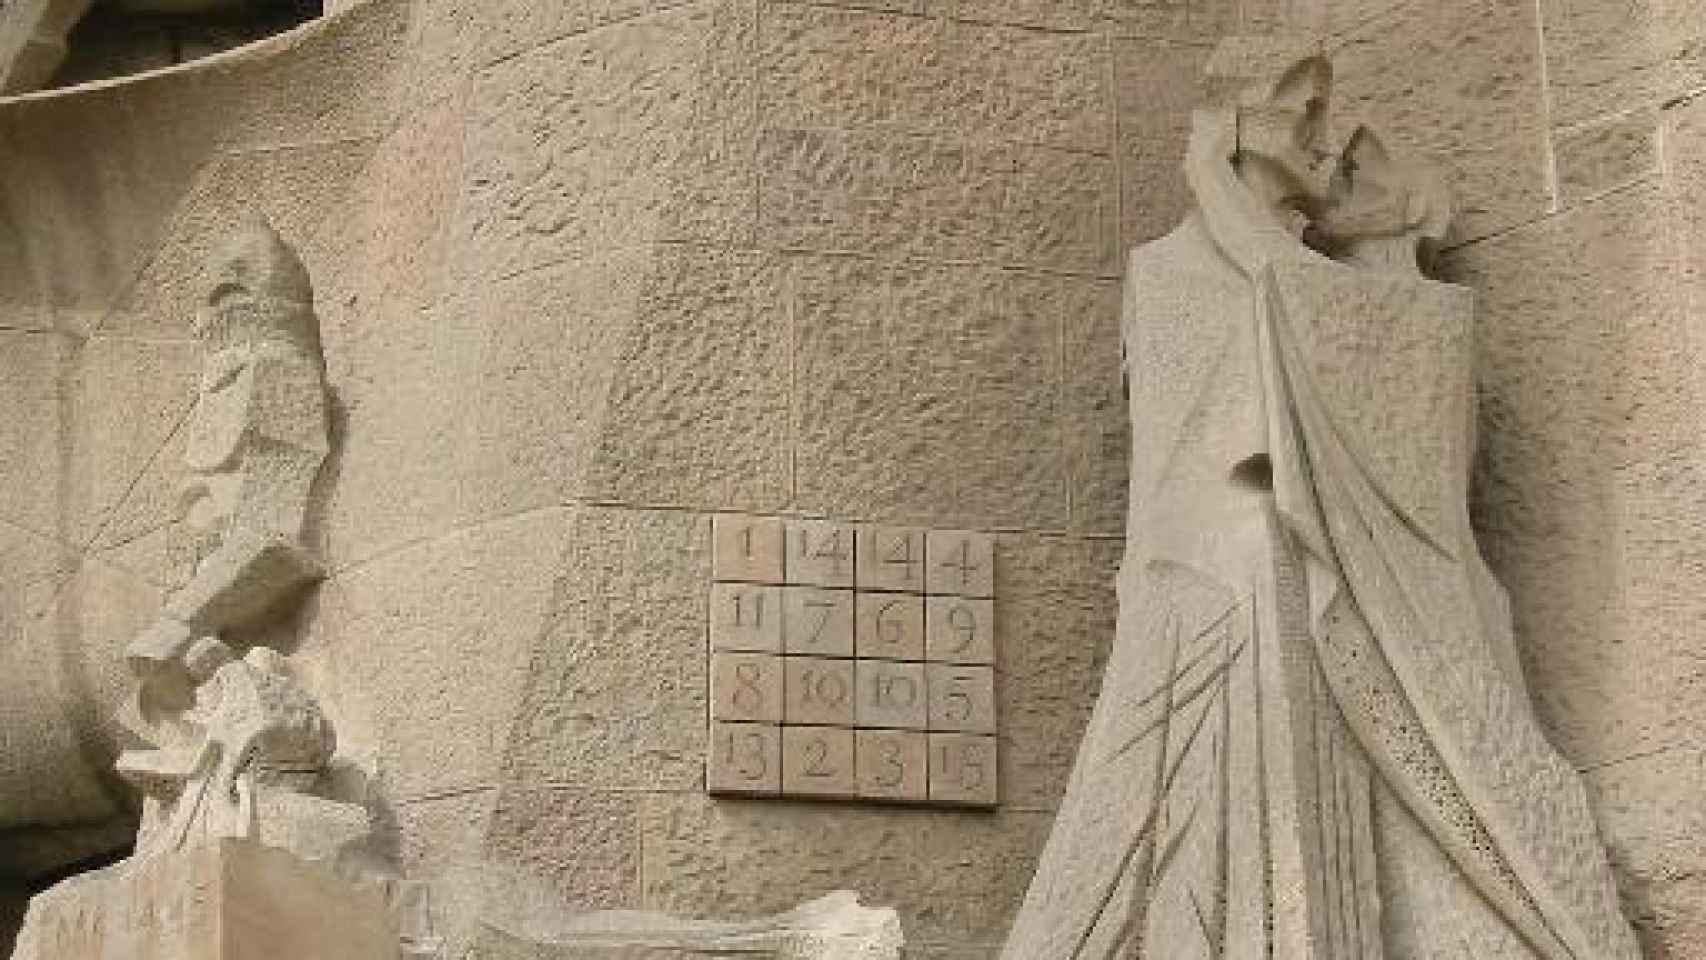 Cuadrado mágico en la Sagrada Familia de Barcelona.